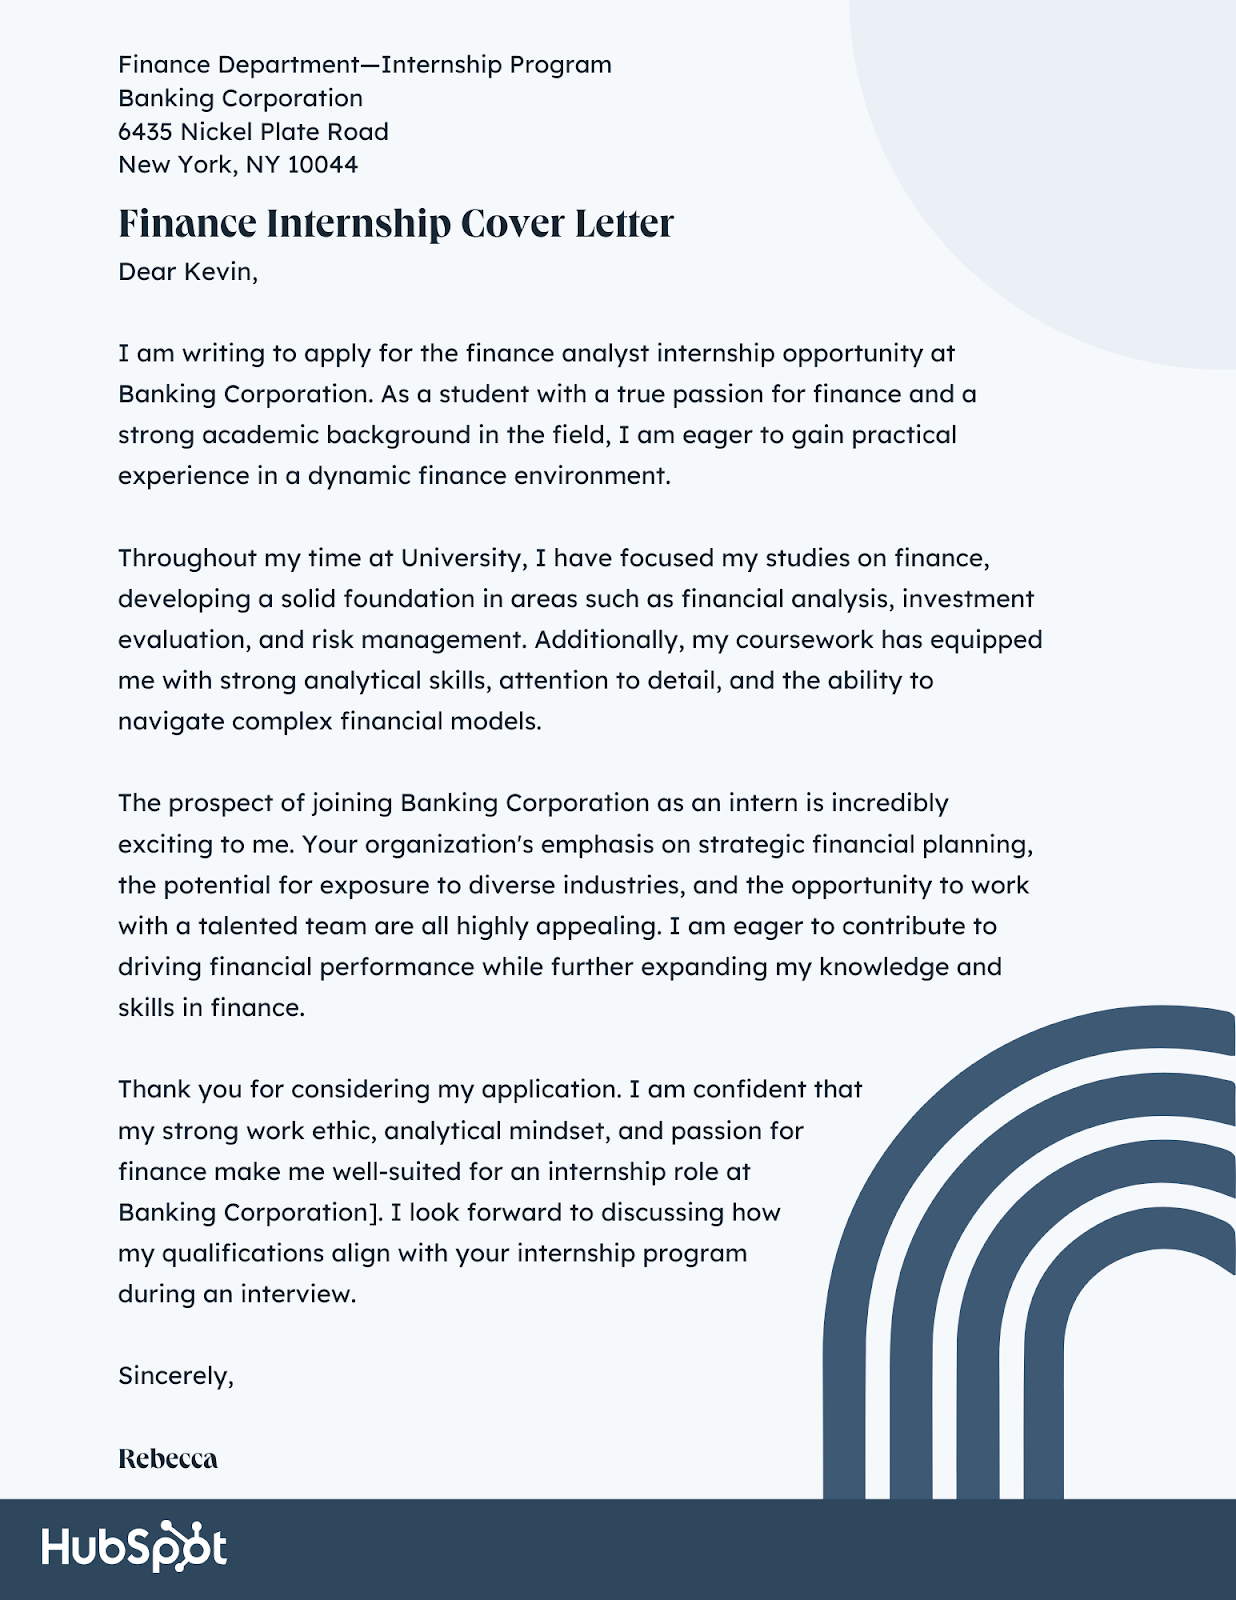  Finance Internship Cover Letter